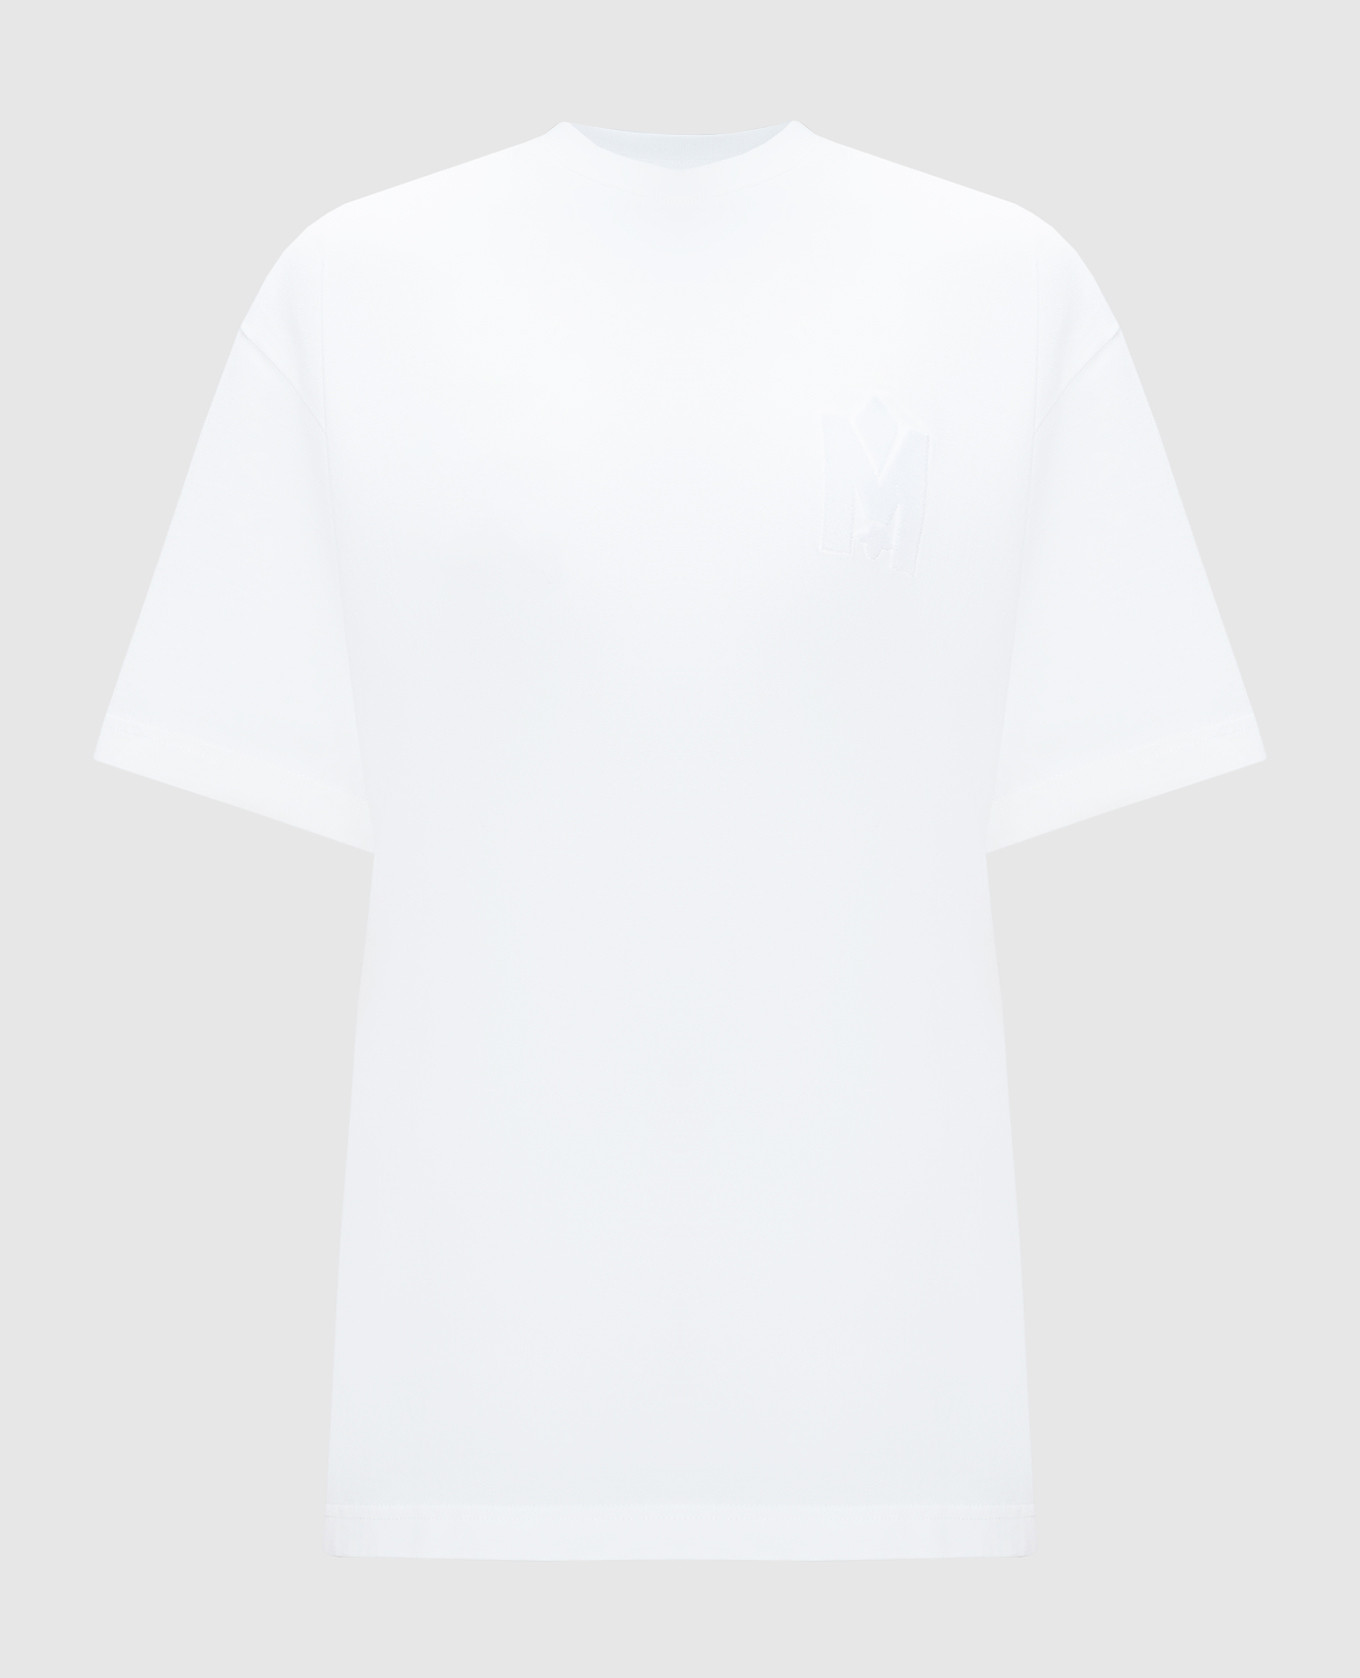 Біла футболка Tee з фактурною емблемою